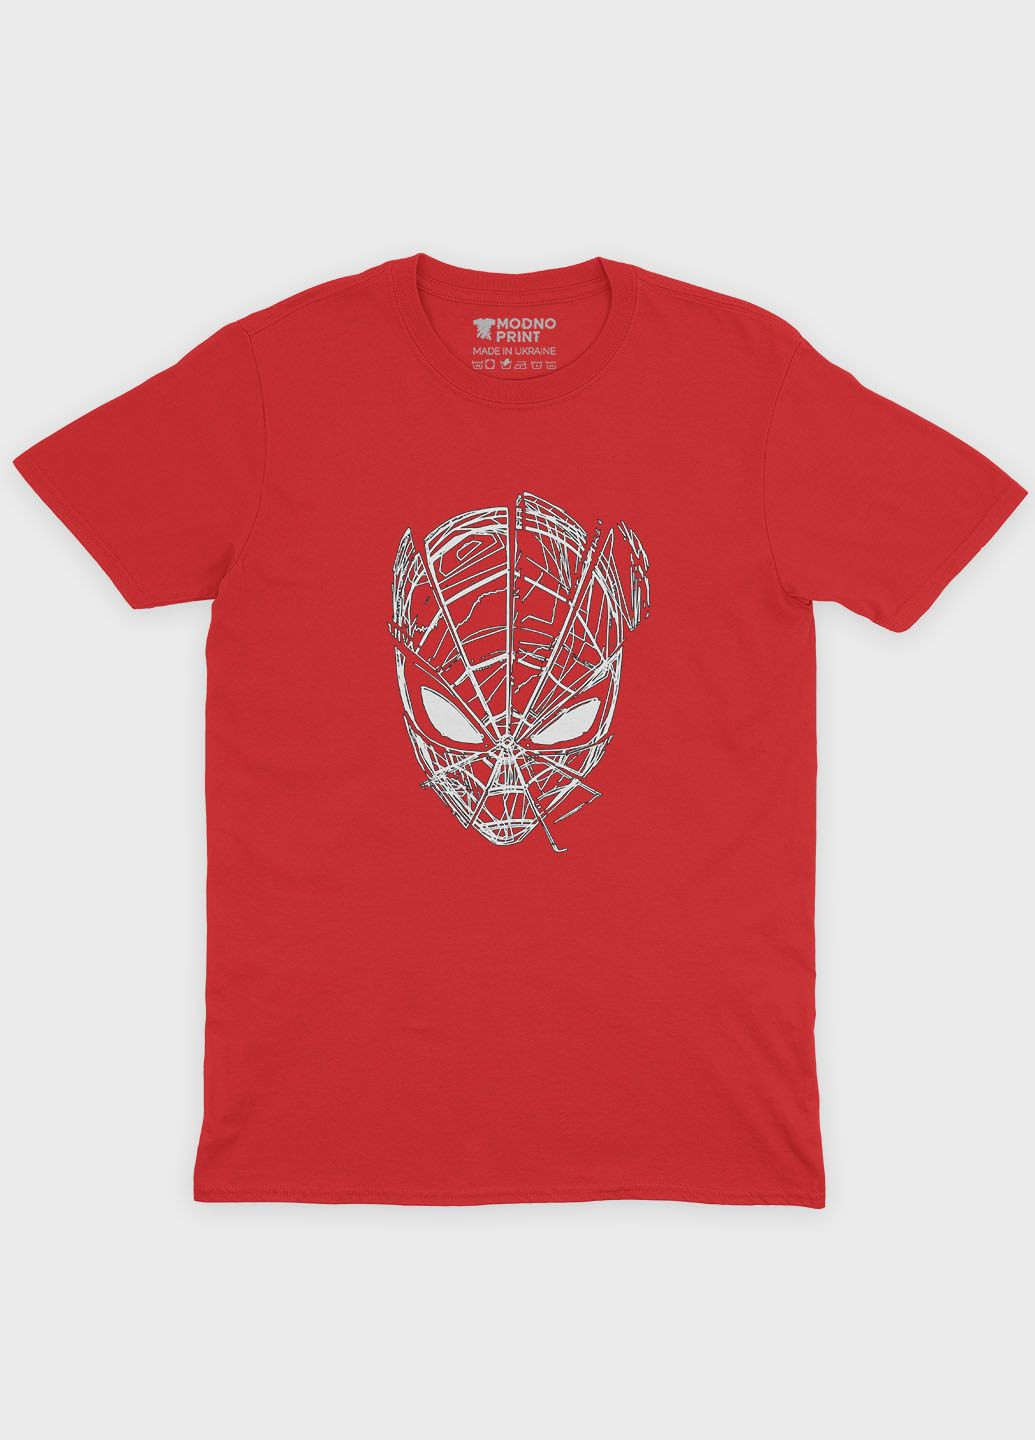 Красная демисезонная футболка для мальчика с принтом супергероя - человек-паук (ts001-1-sre-006-014-070-b) Modno